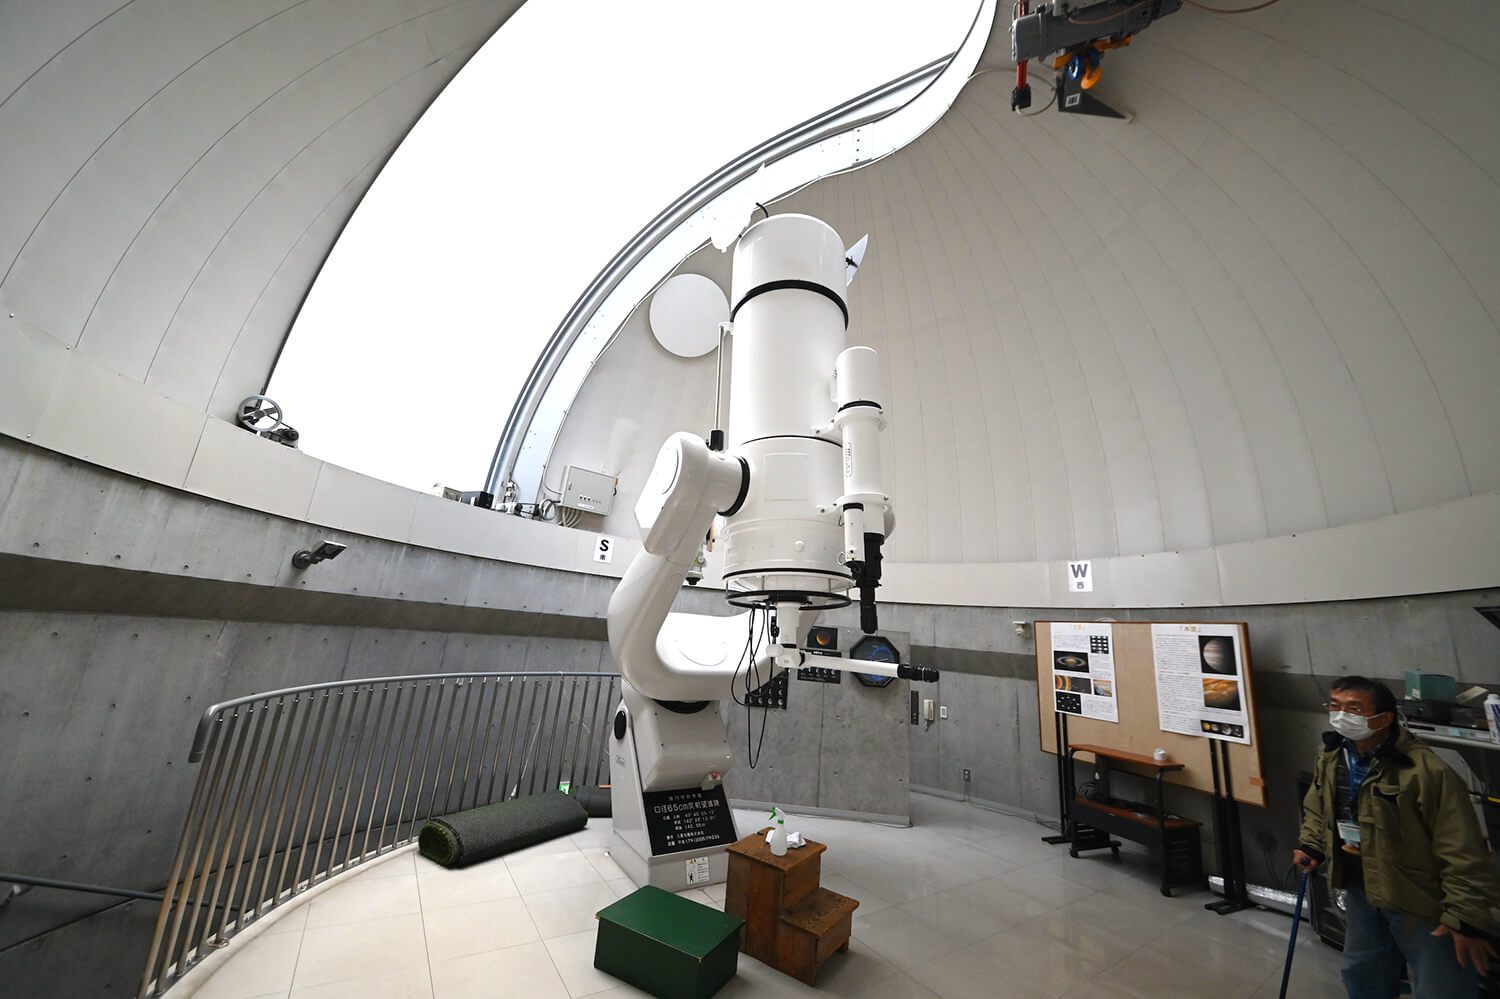 天体観測用望遠鏡がある公設天文台として最も古くから太陽黒点観測が続けられている